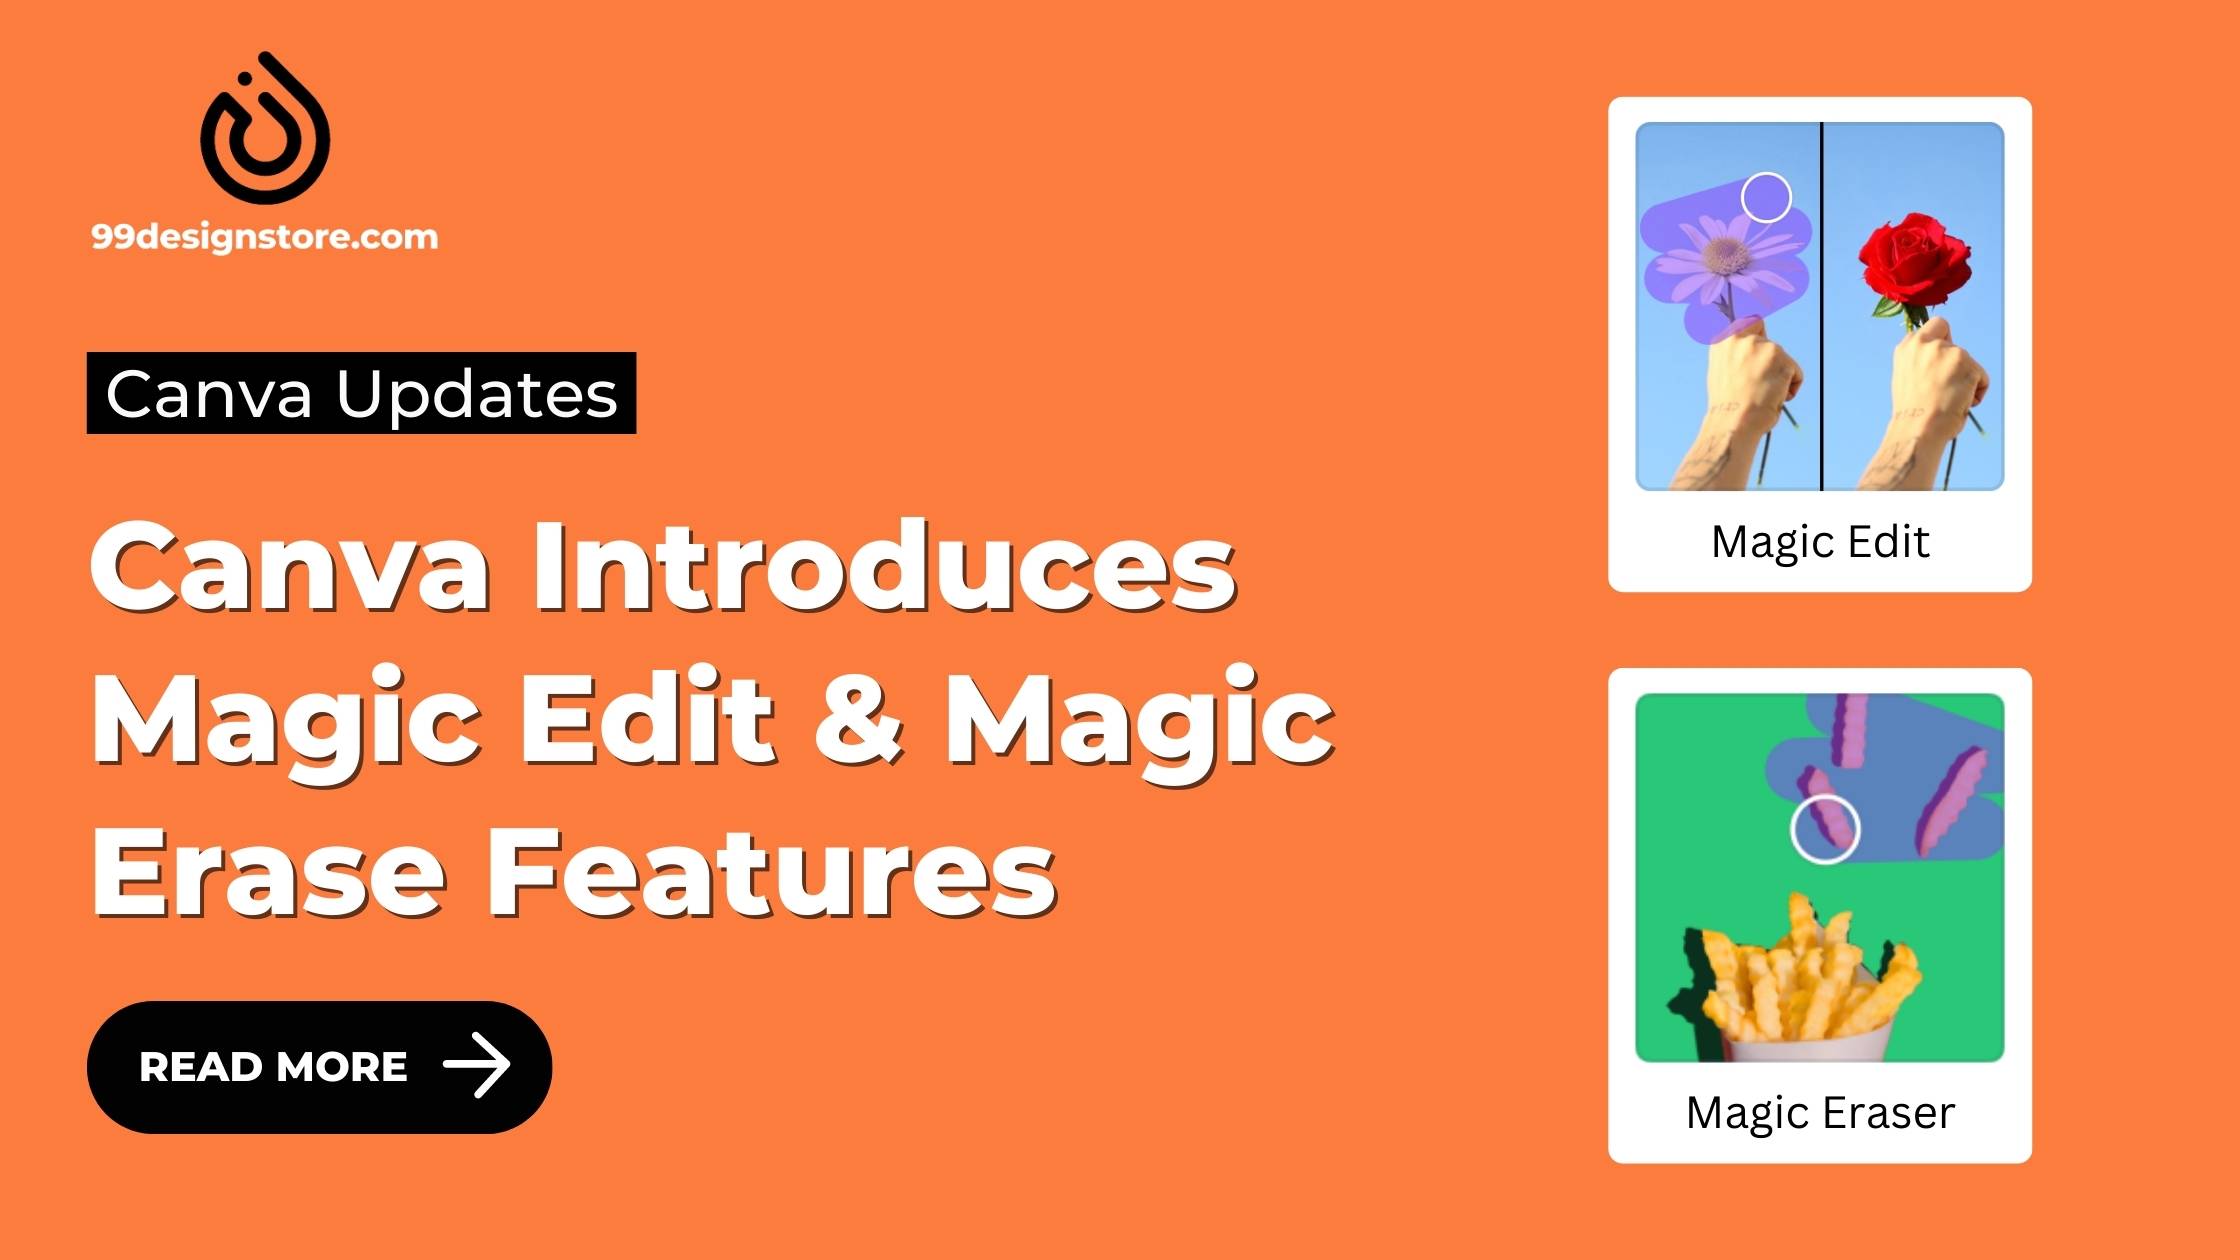 Magic Edit & Magic Erase Features - Canva Updates